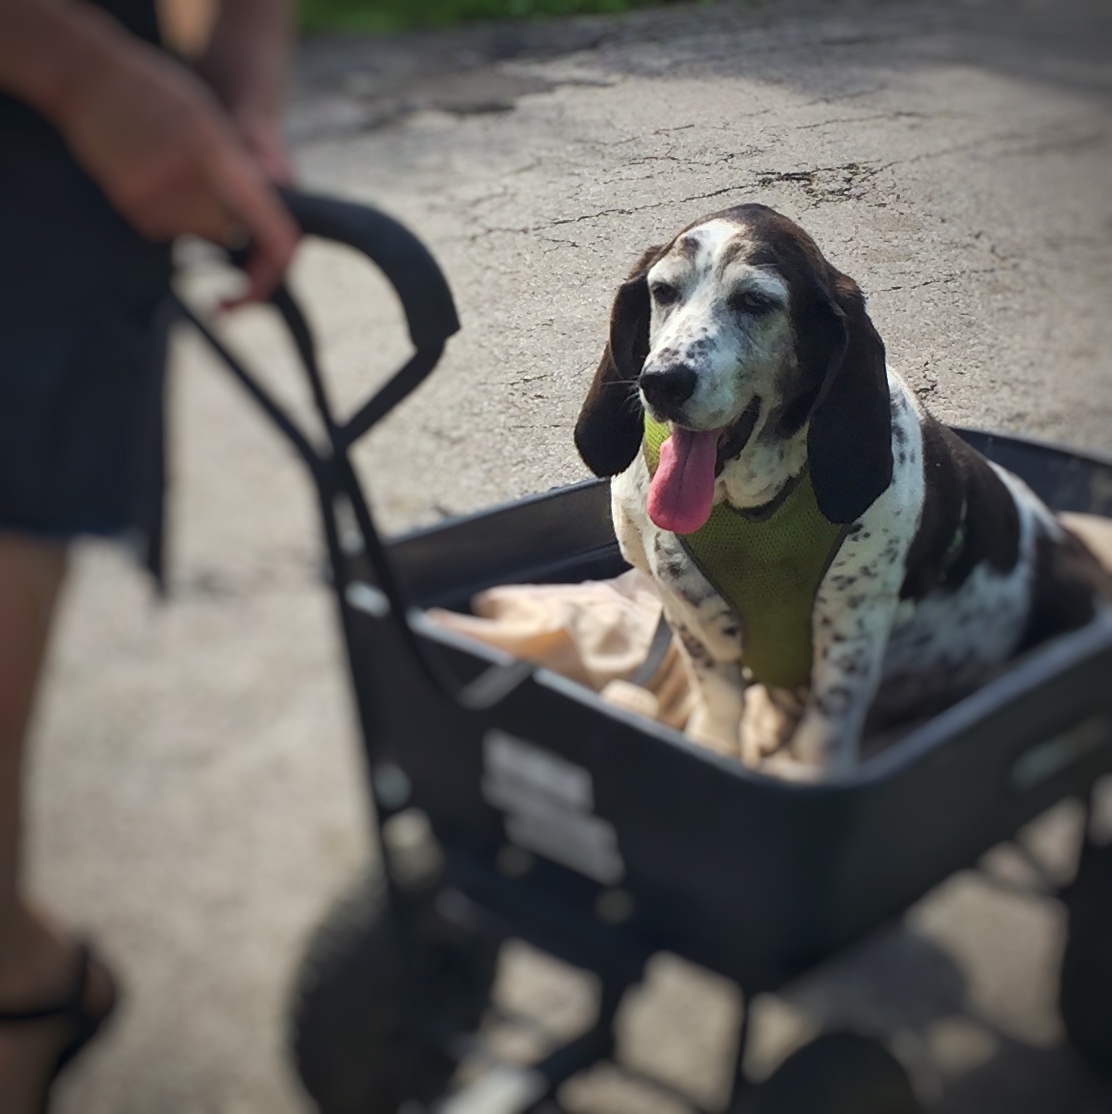 Daisy, a basset hound, in a garden cart on a walk through the neighborhood.